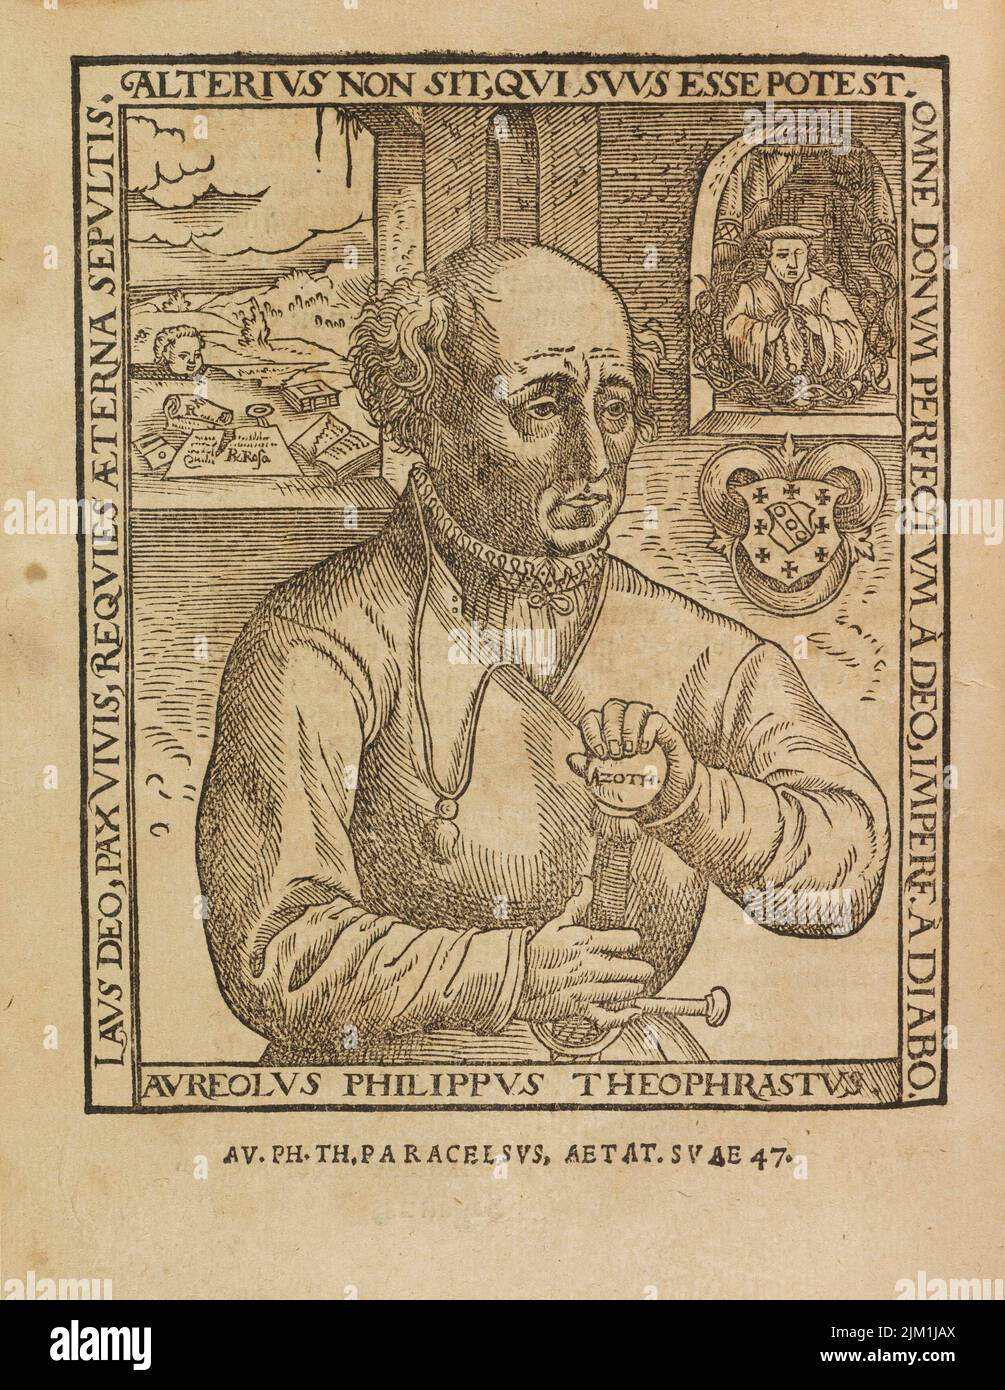 Philippus Theophrastus Aureolus Bombastus von Hohenheim (Paracelsus). Museum: PRIVATE COLLECTION. Author: AUGUSTIN HIRSCHVOGEL. Stock Photo